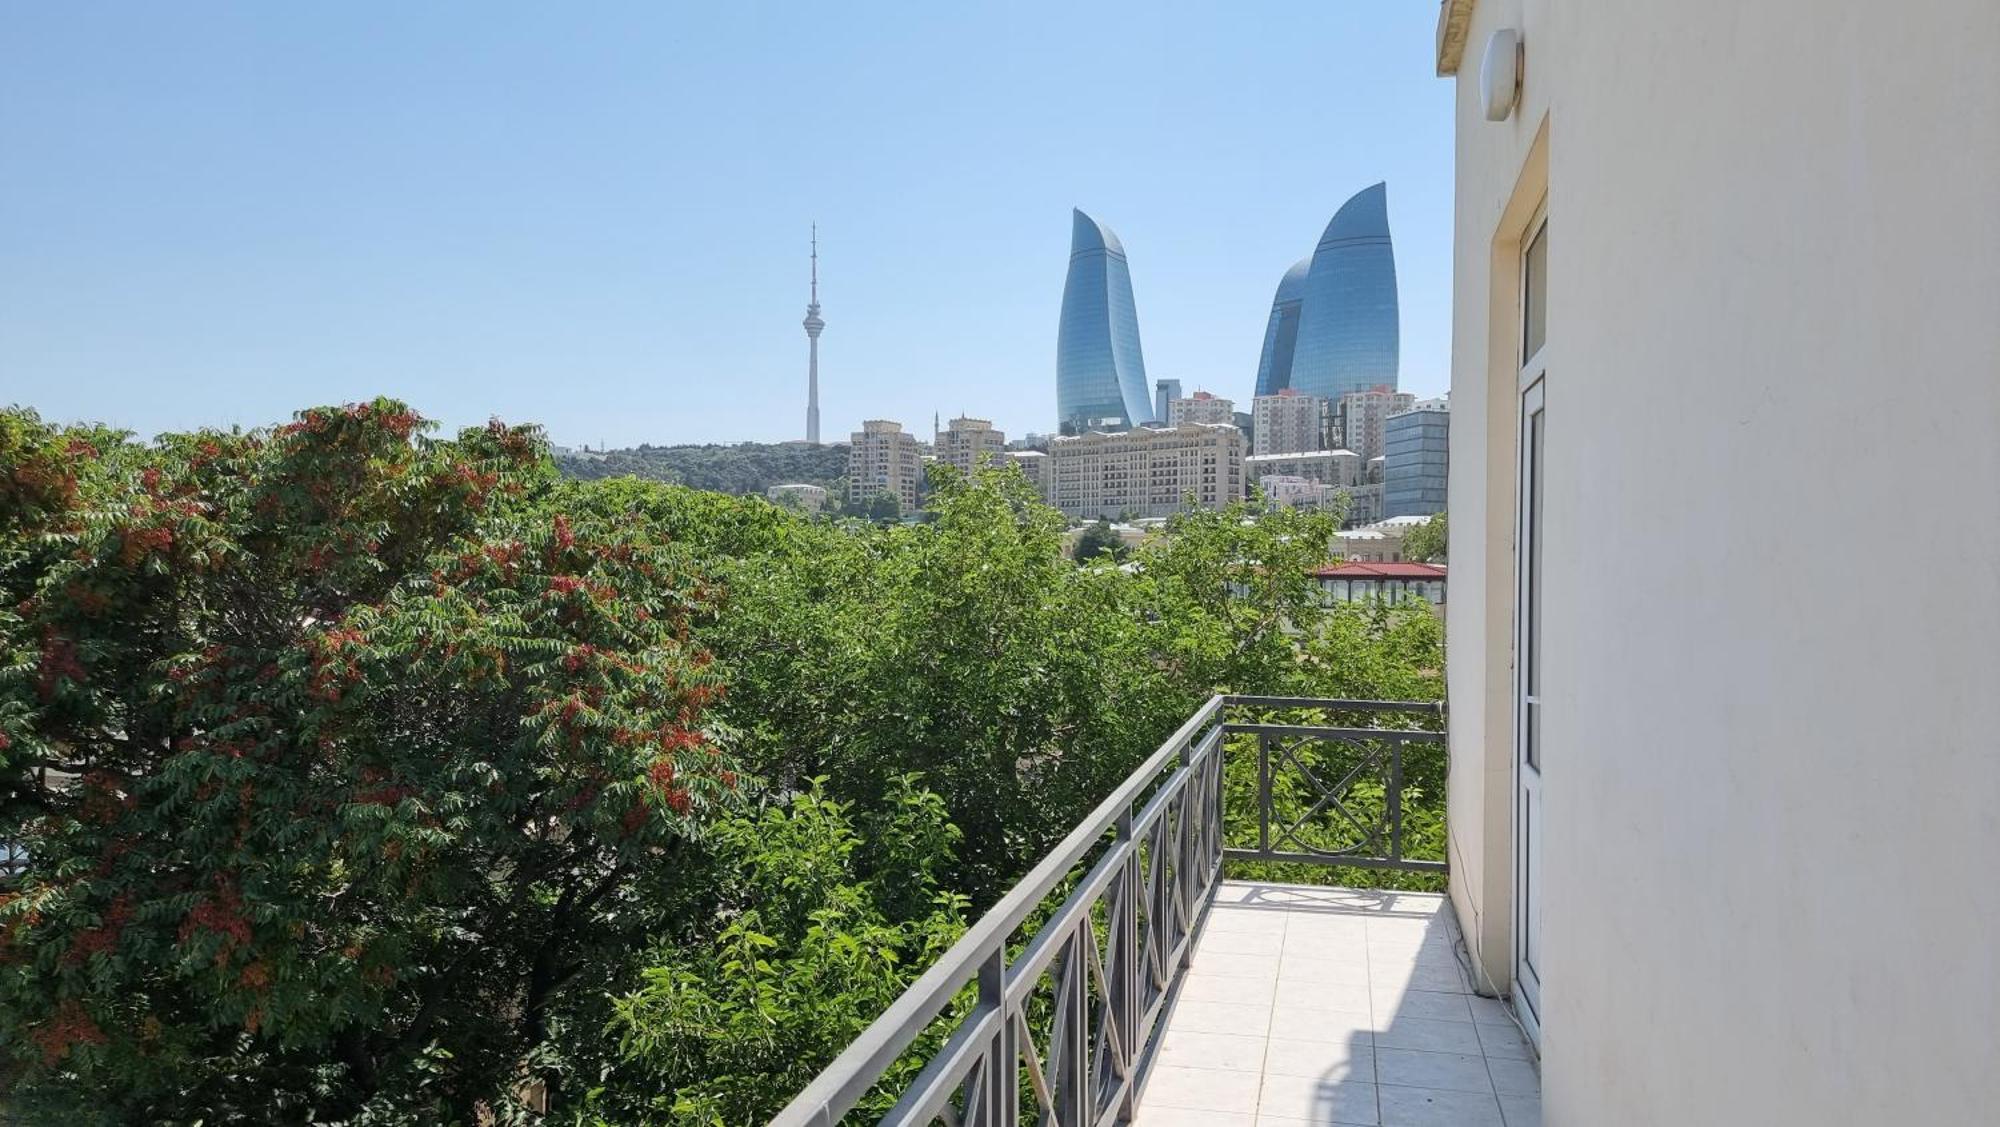 Qiz Galasi Hotel Baku Exterior foto